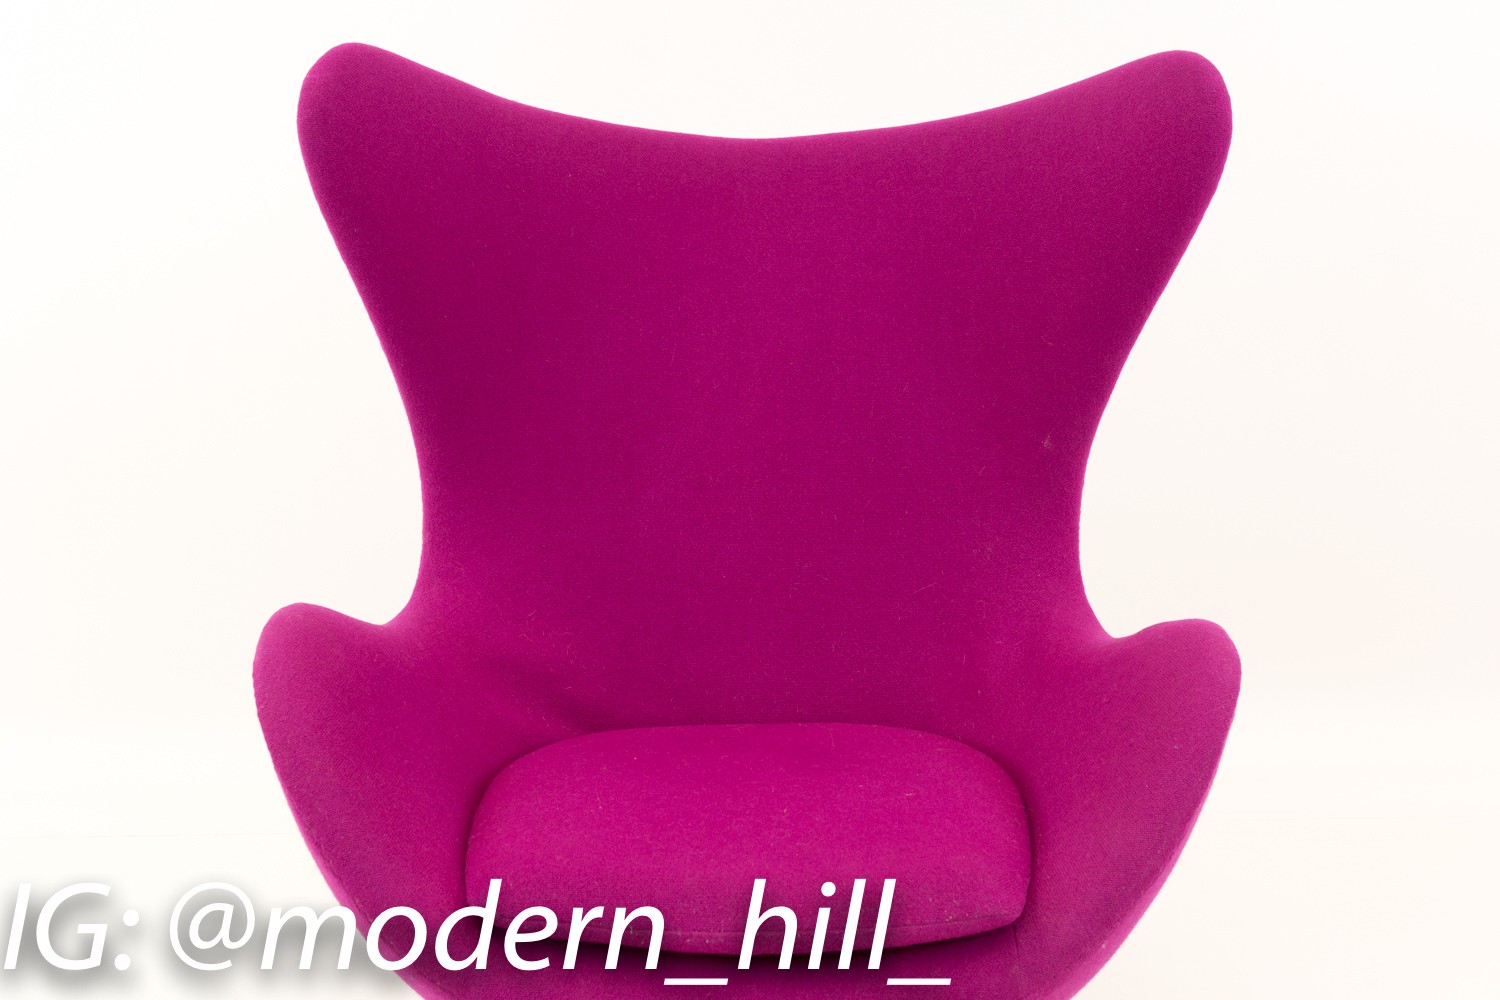 Arne Jacobsen for Fritz Hansen Mid Century Modern Egg Lounge Chair